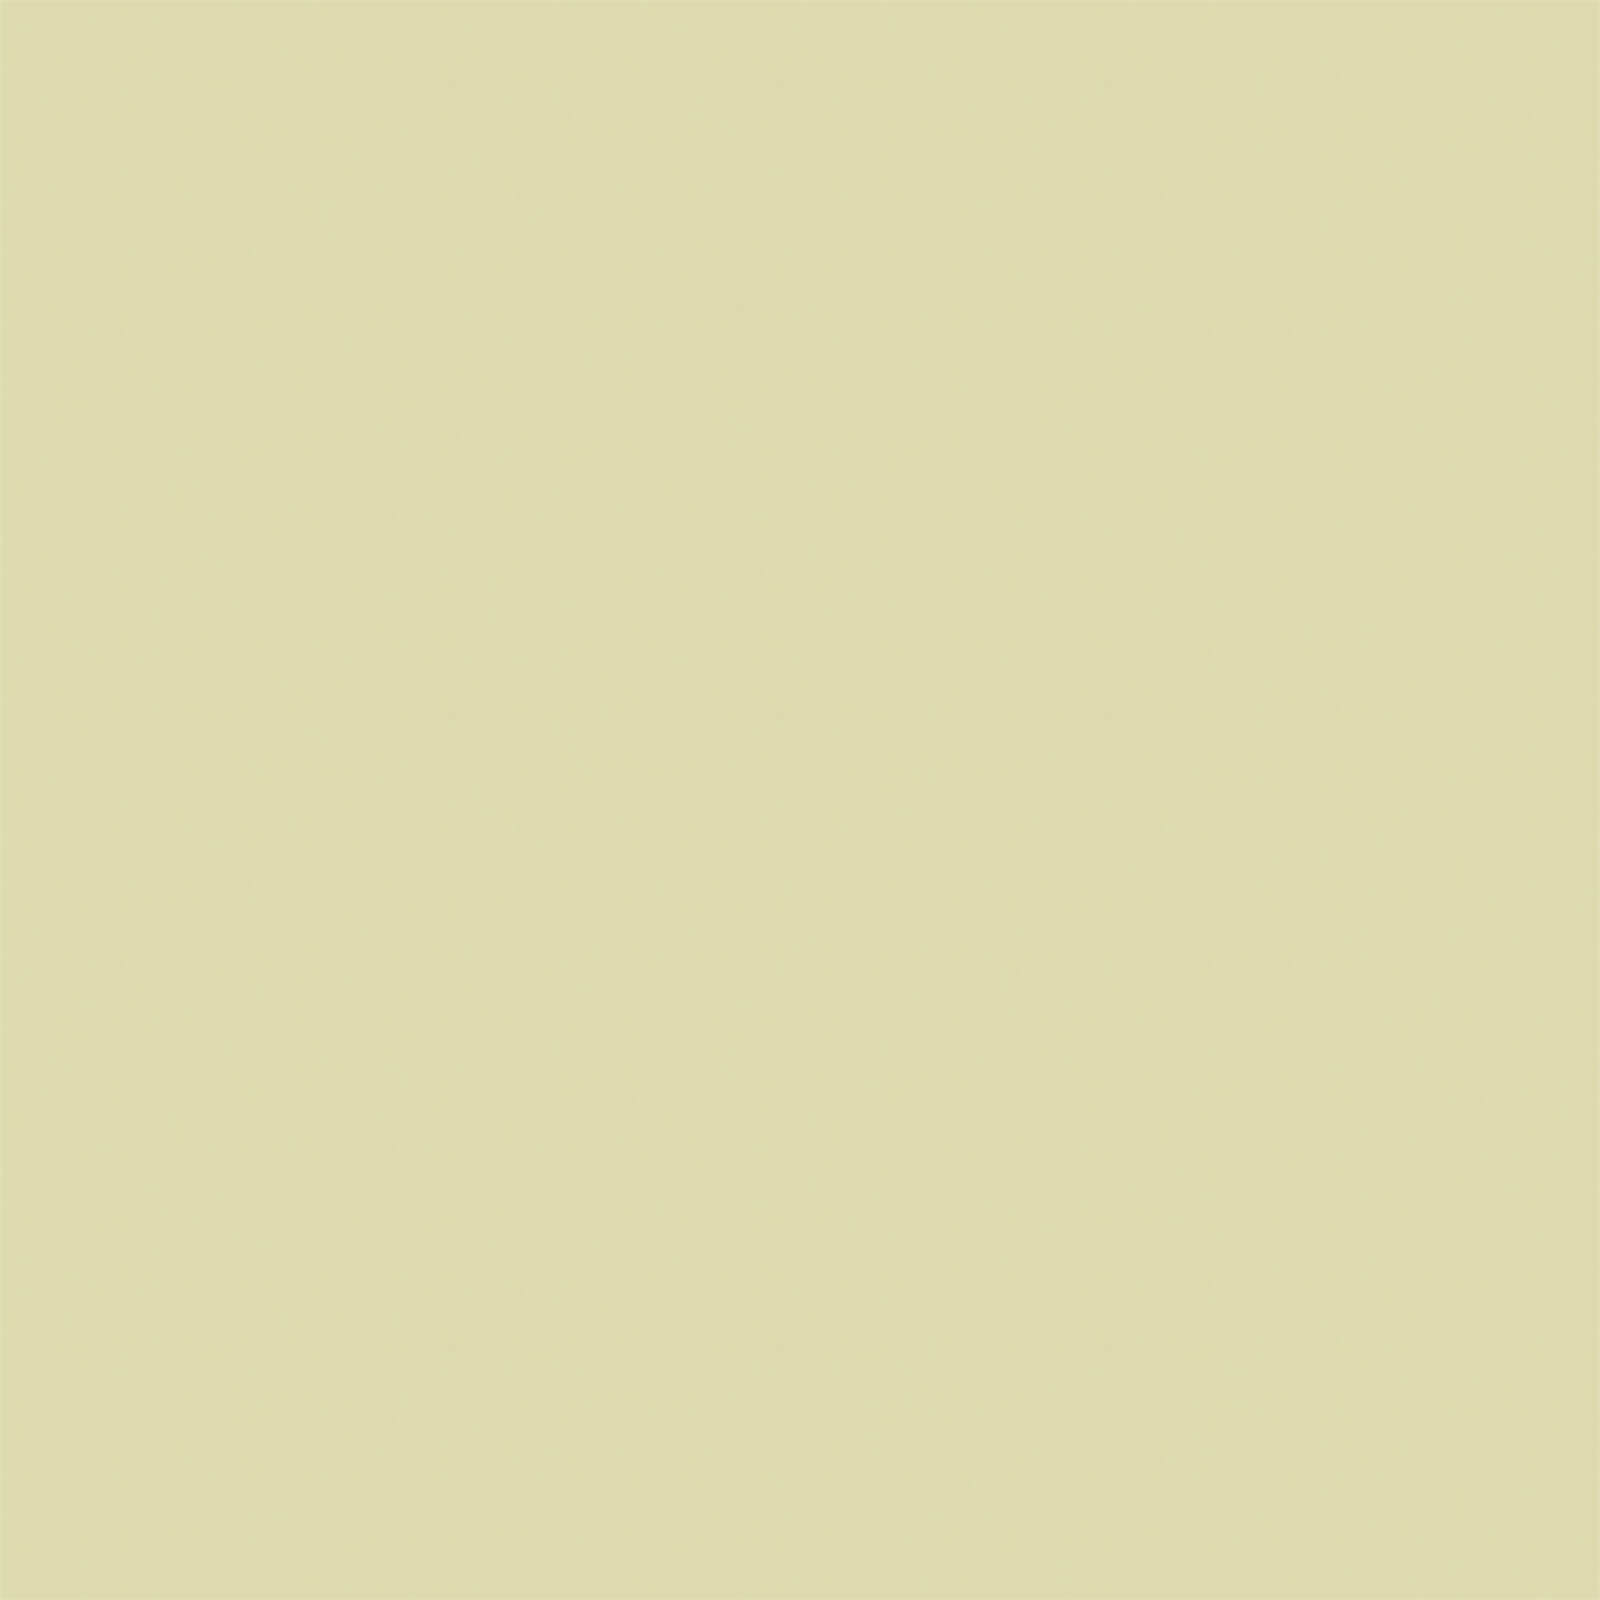 Ronseal Diamond Hard Floor Paint Olive Green - 750ml